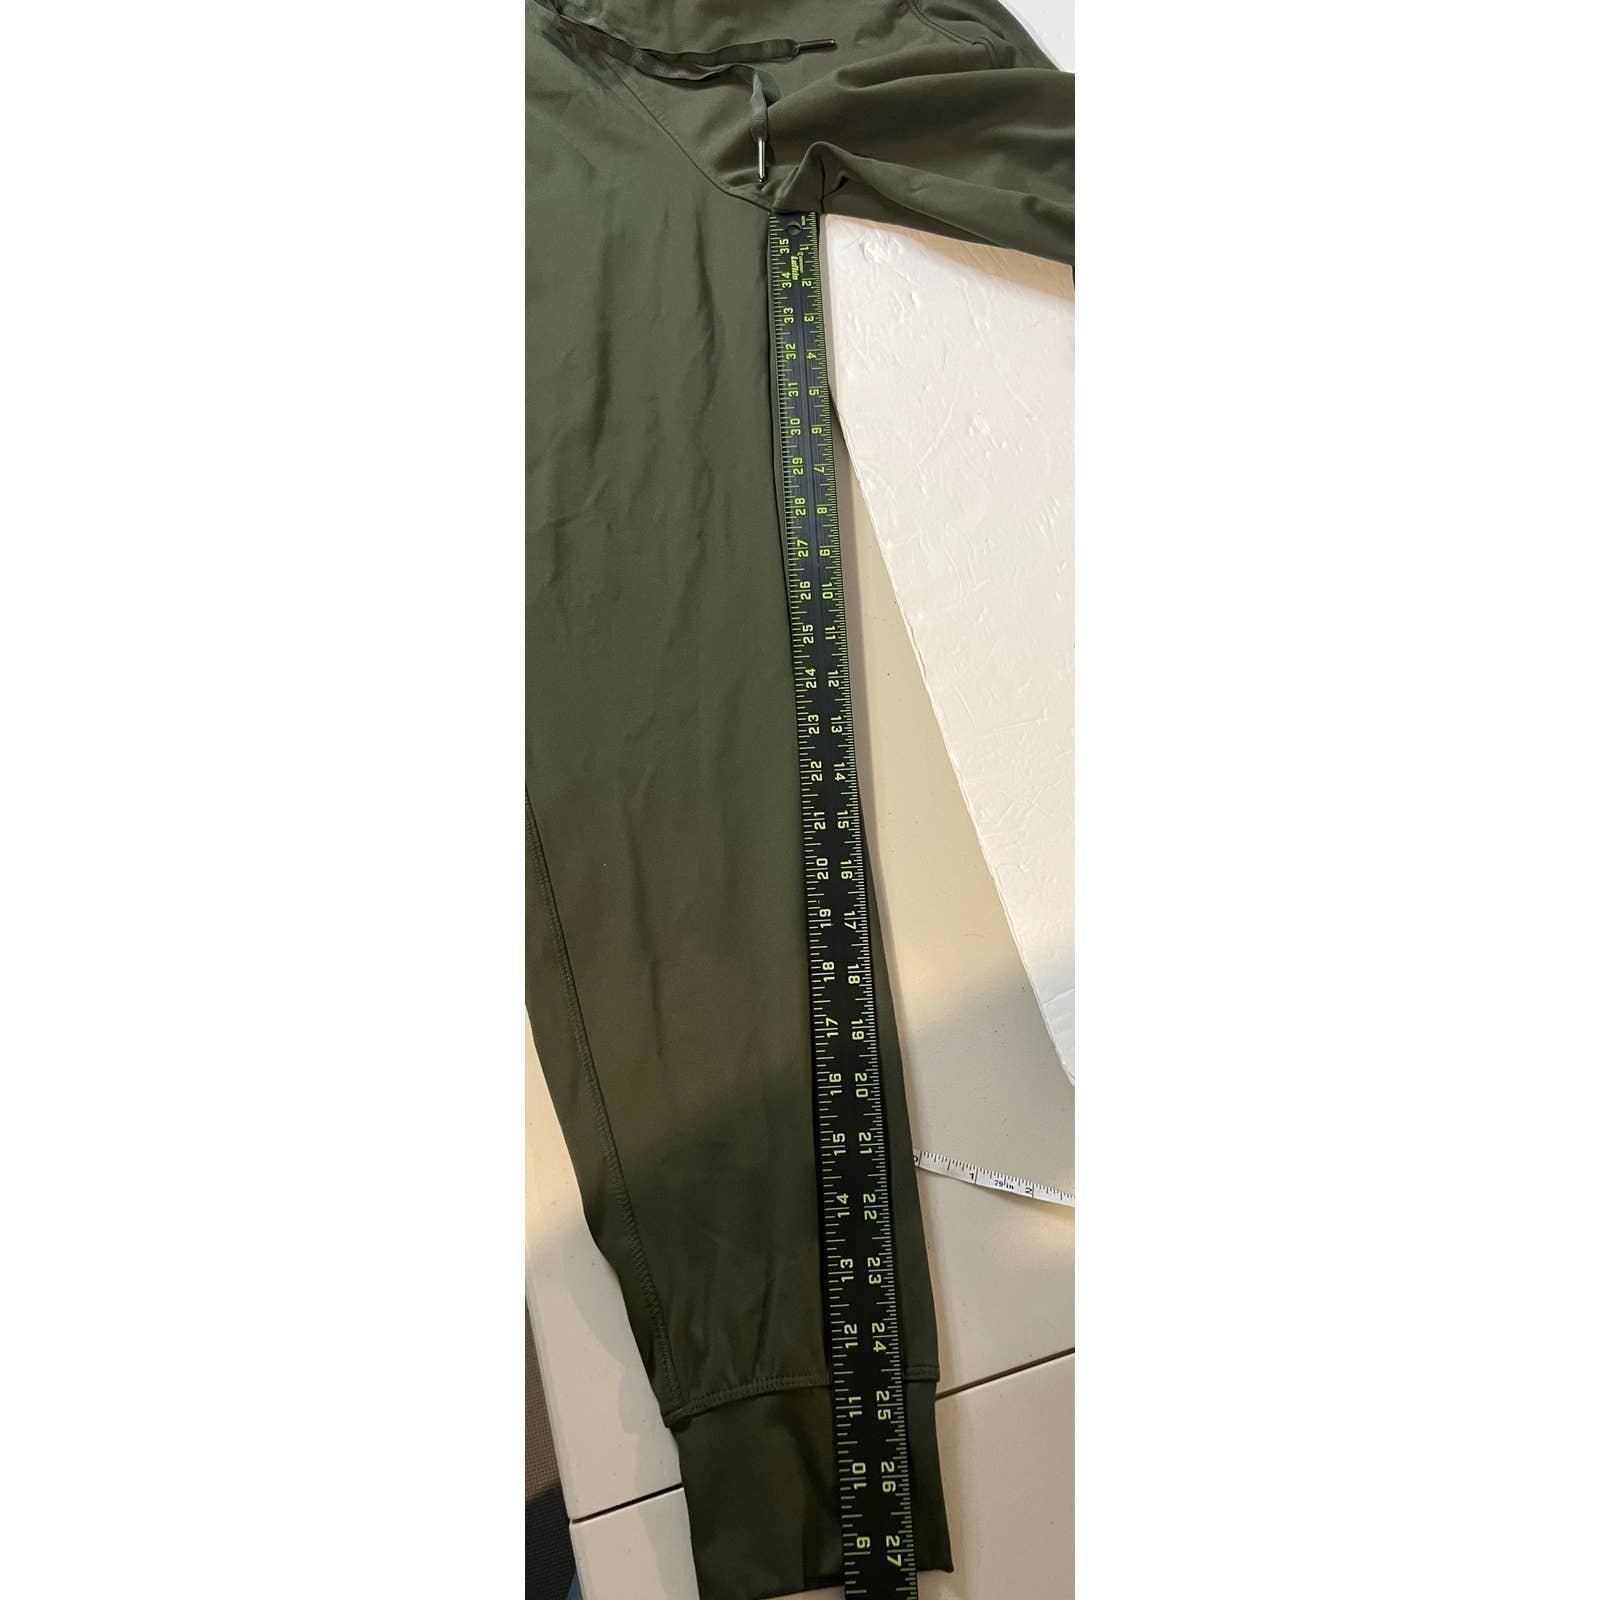 big discount Avia Women´s Pants Size S 4/6 Olive Green Color Elastic Waist Drawstring P2Aur4uMz no tax